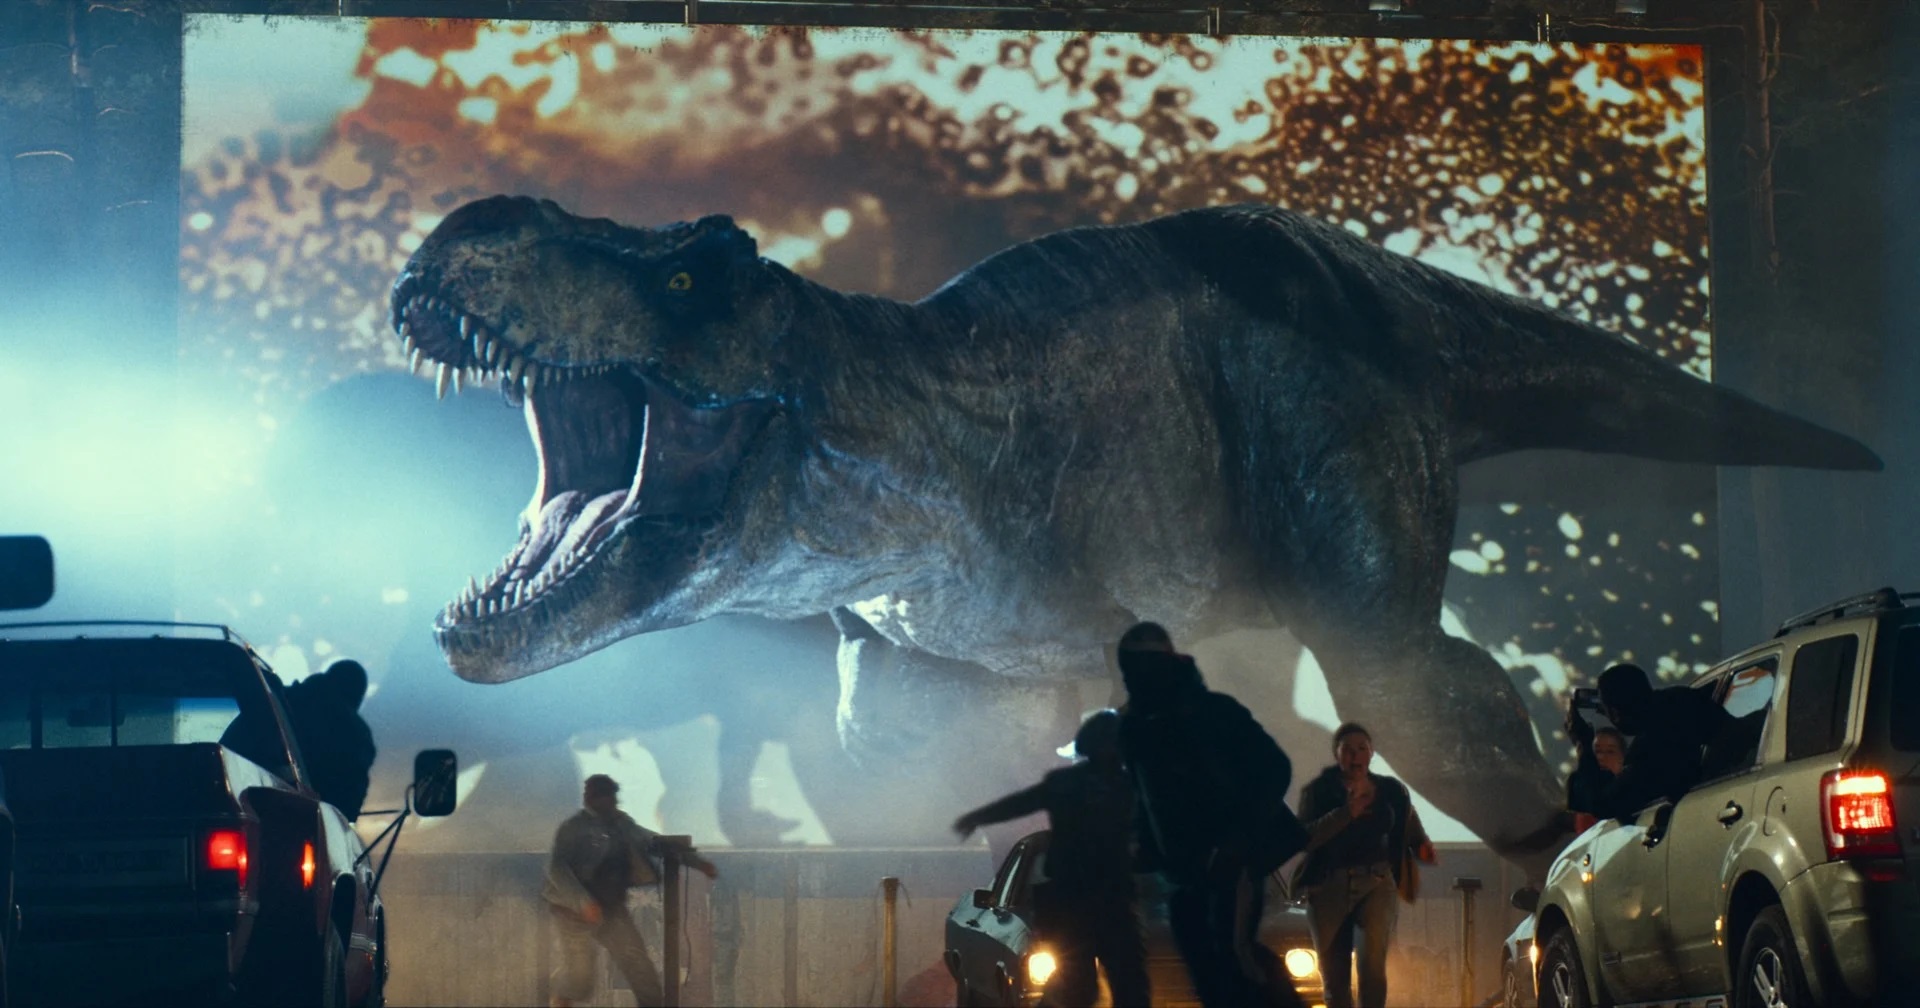 แฟรนไชส์ ‘Jurassic World’ ทำรายได้ทั่วโลกทะลุ 6,000 ล้านเหรียญแล้ว